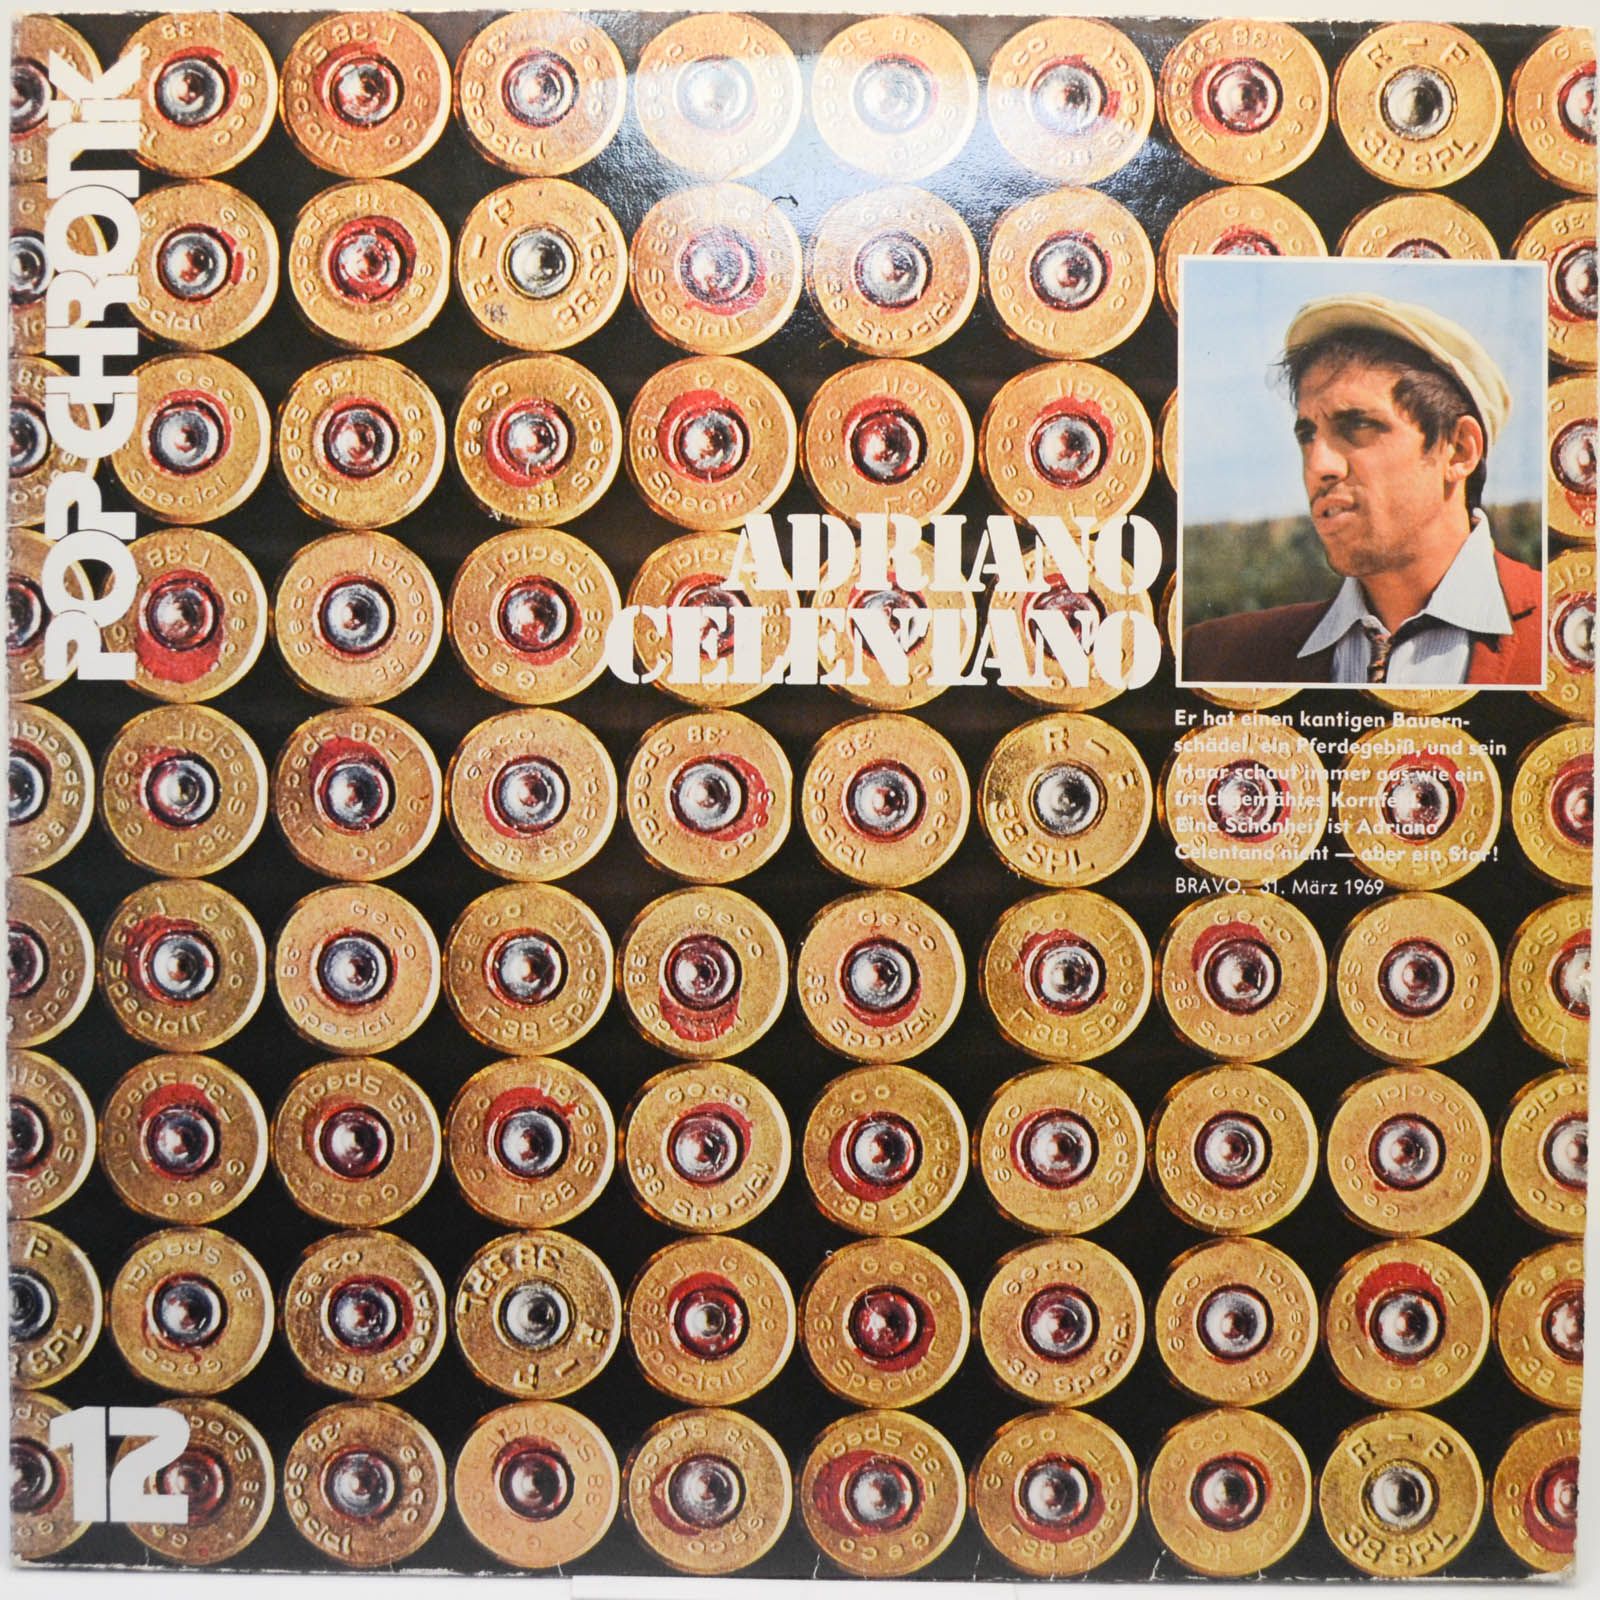 Adriano Celentano — Pop Chronik (2LP, booklet), 1977